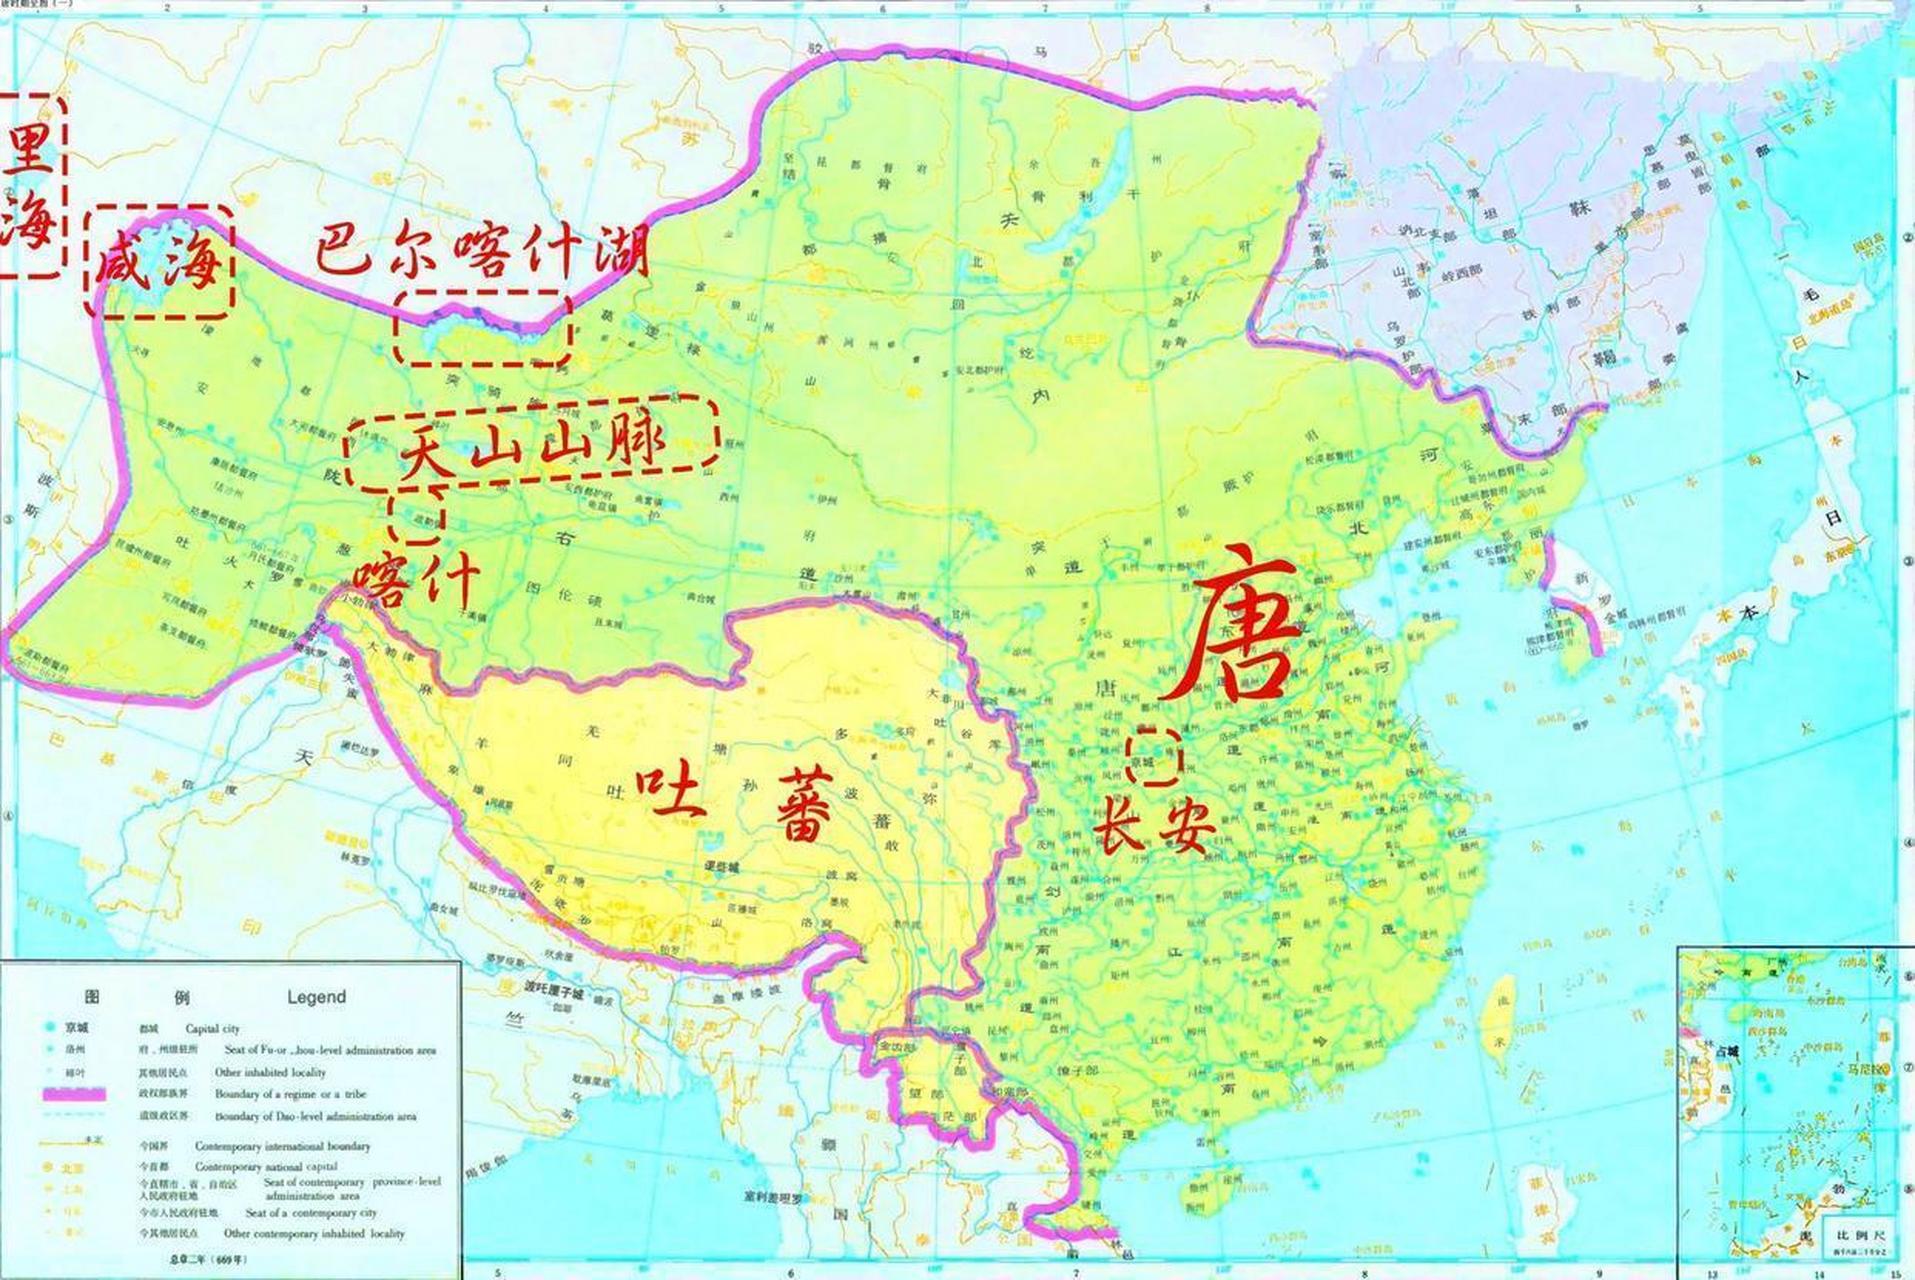 唐朝疆域极盛时期东至朝鲜半岛,西达中亚咸海一带,南至越南顺化,北括